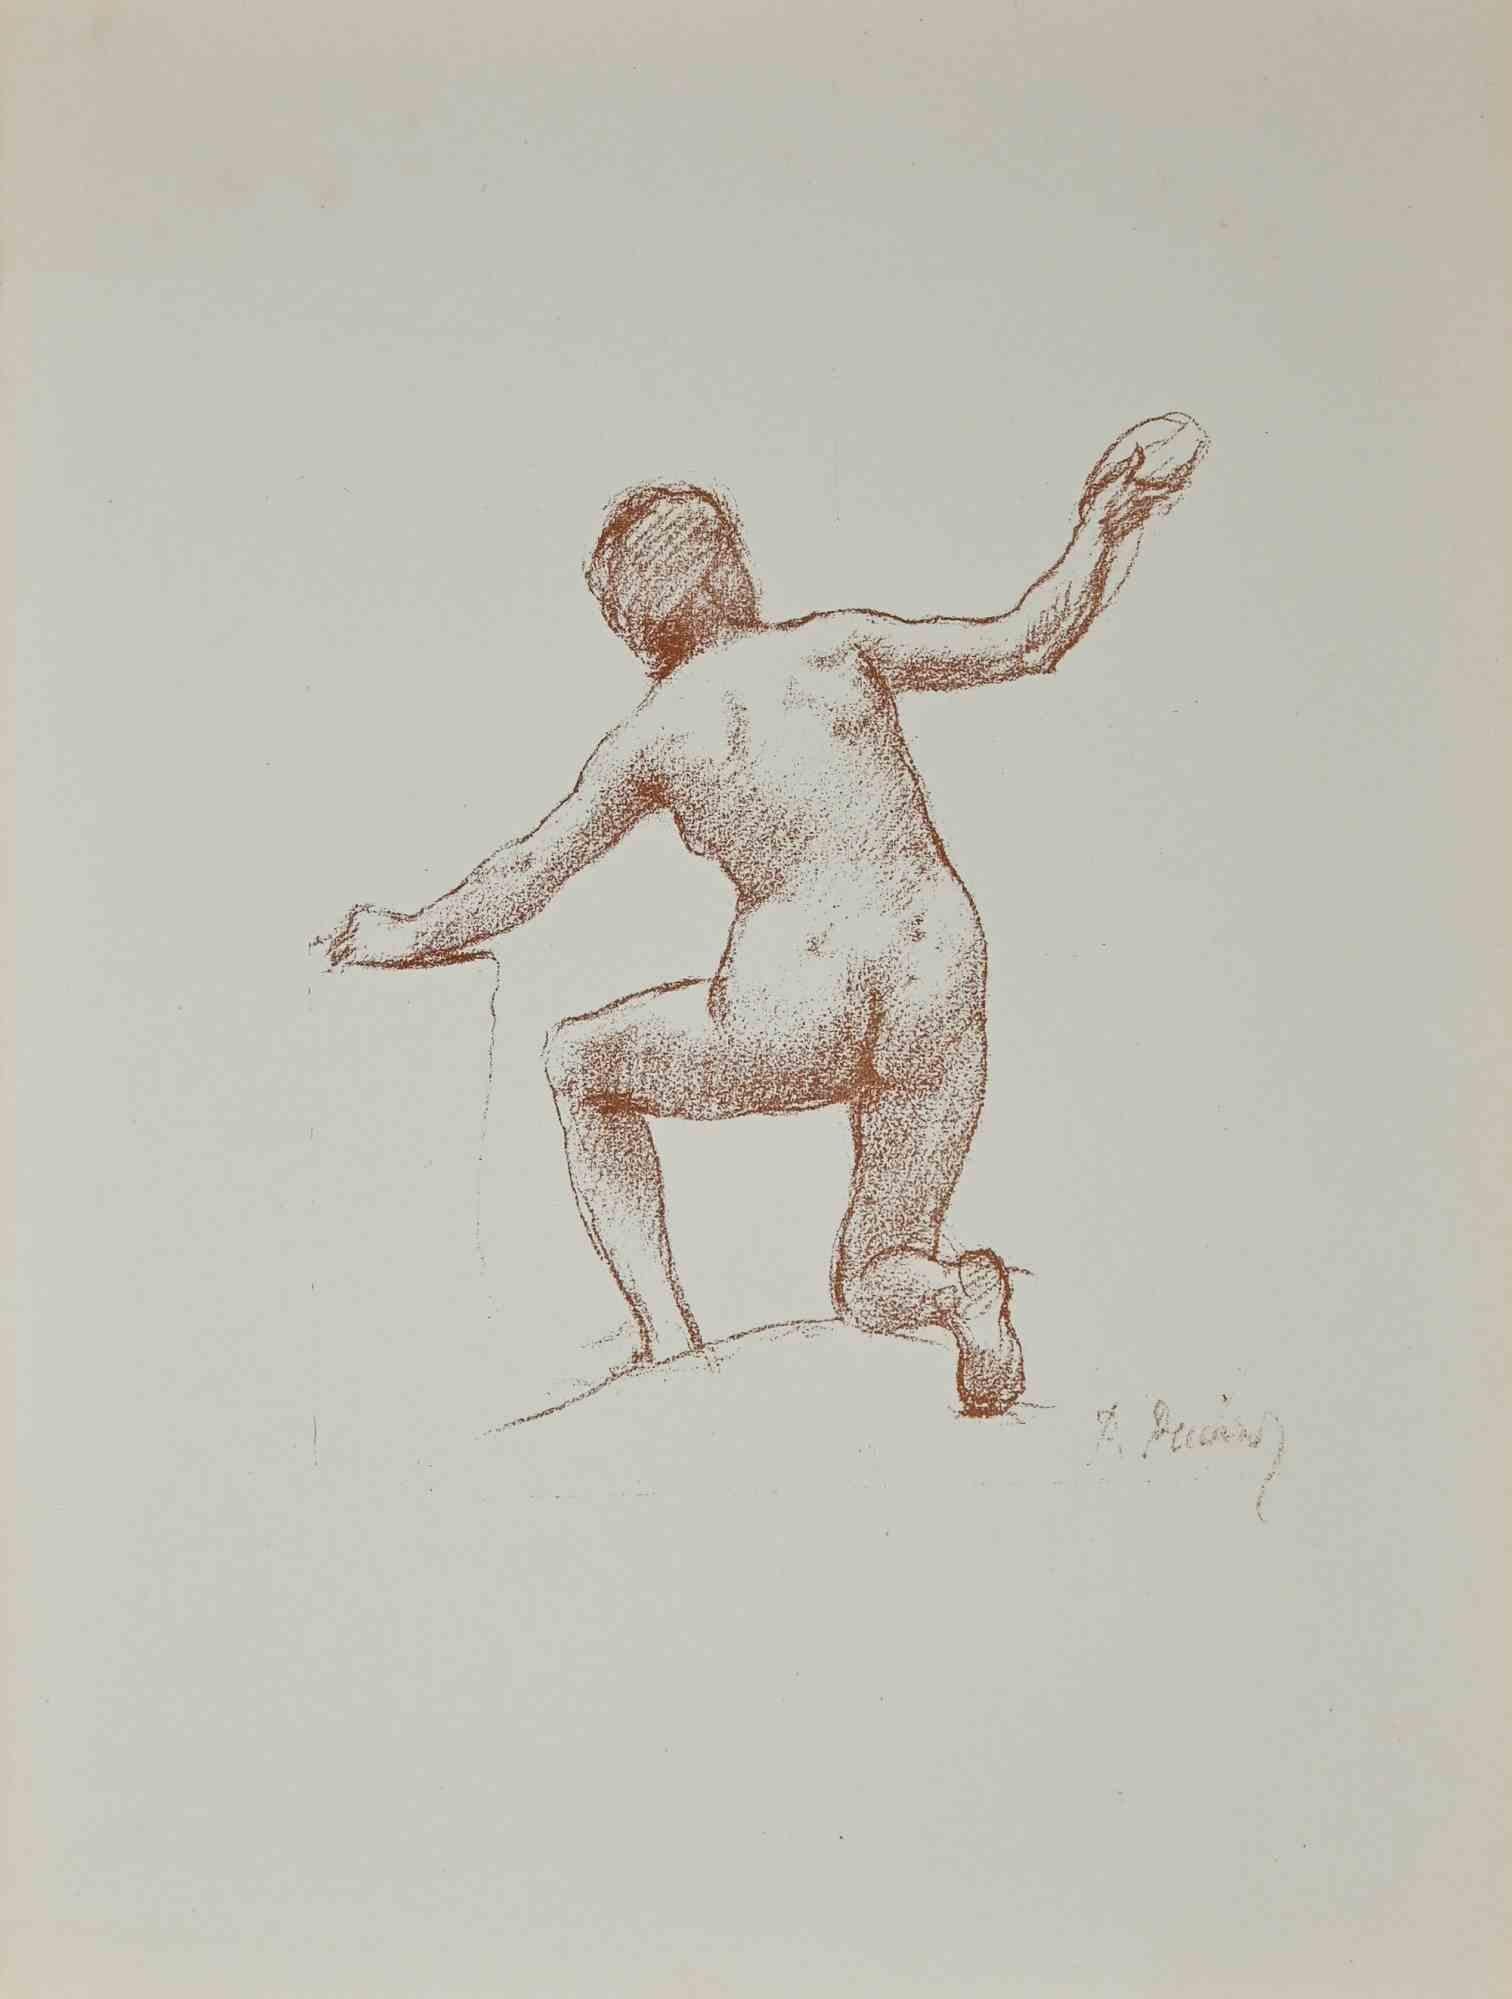 Pierre Puvis de Chavannes Nude Print - Nude - Original Lithograph by P. Puvis de Chavannes - Late 19th Century